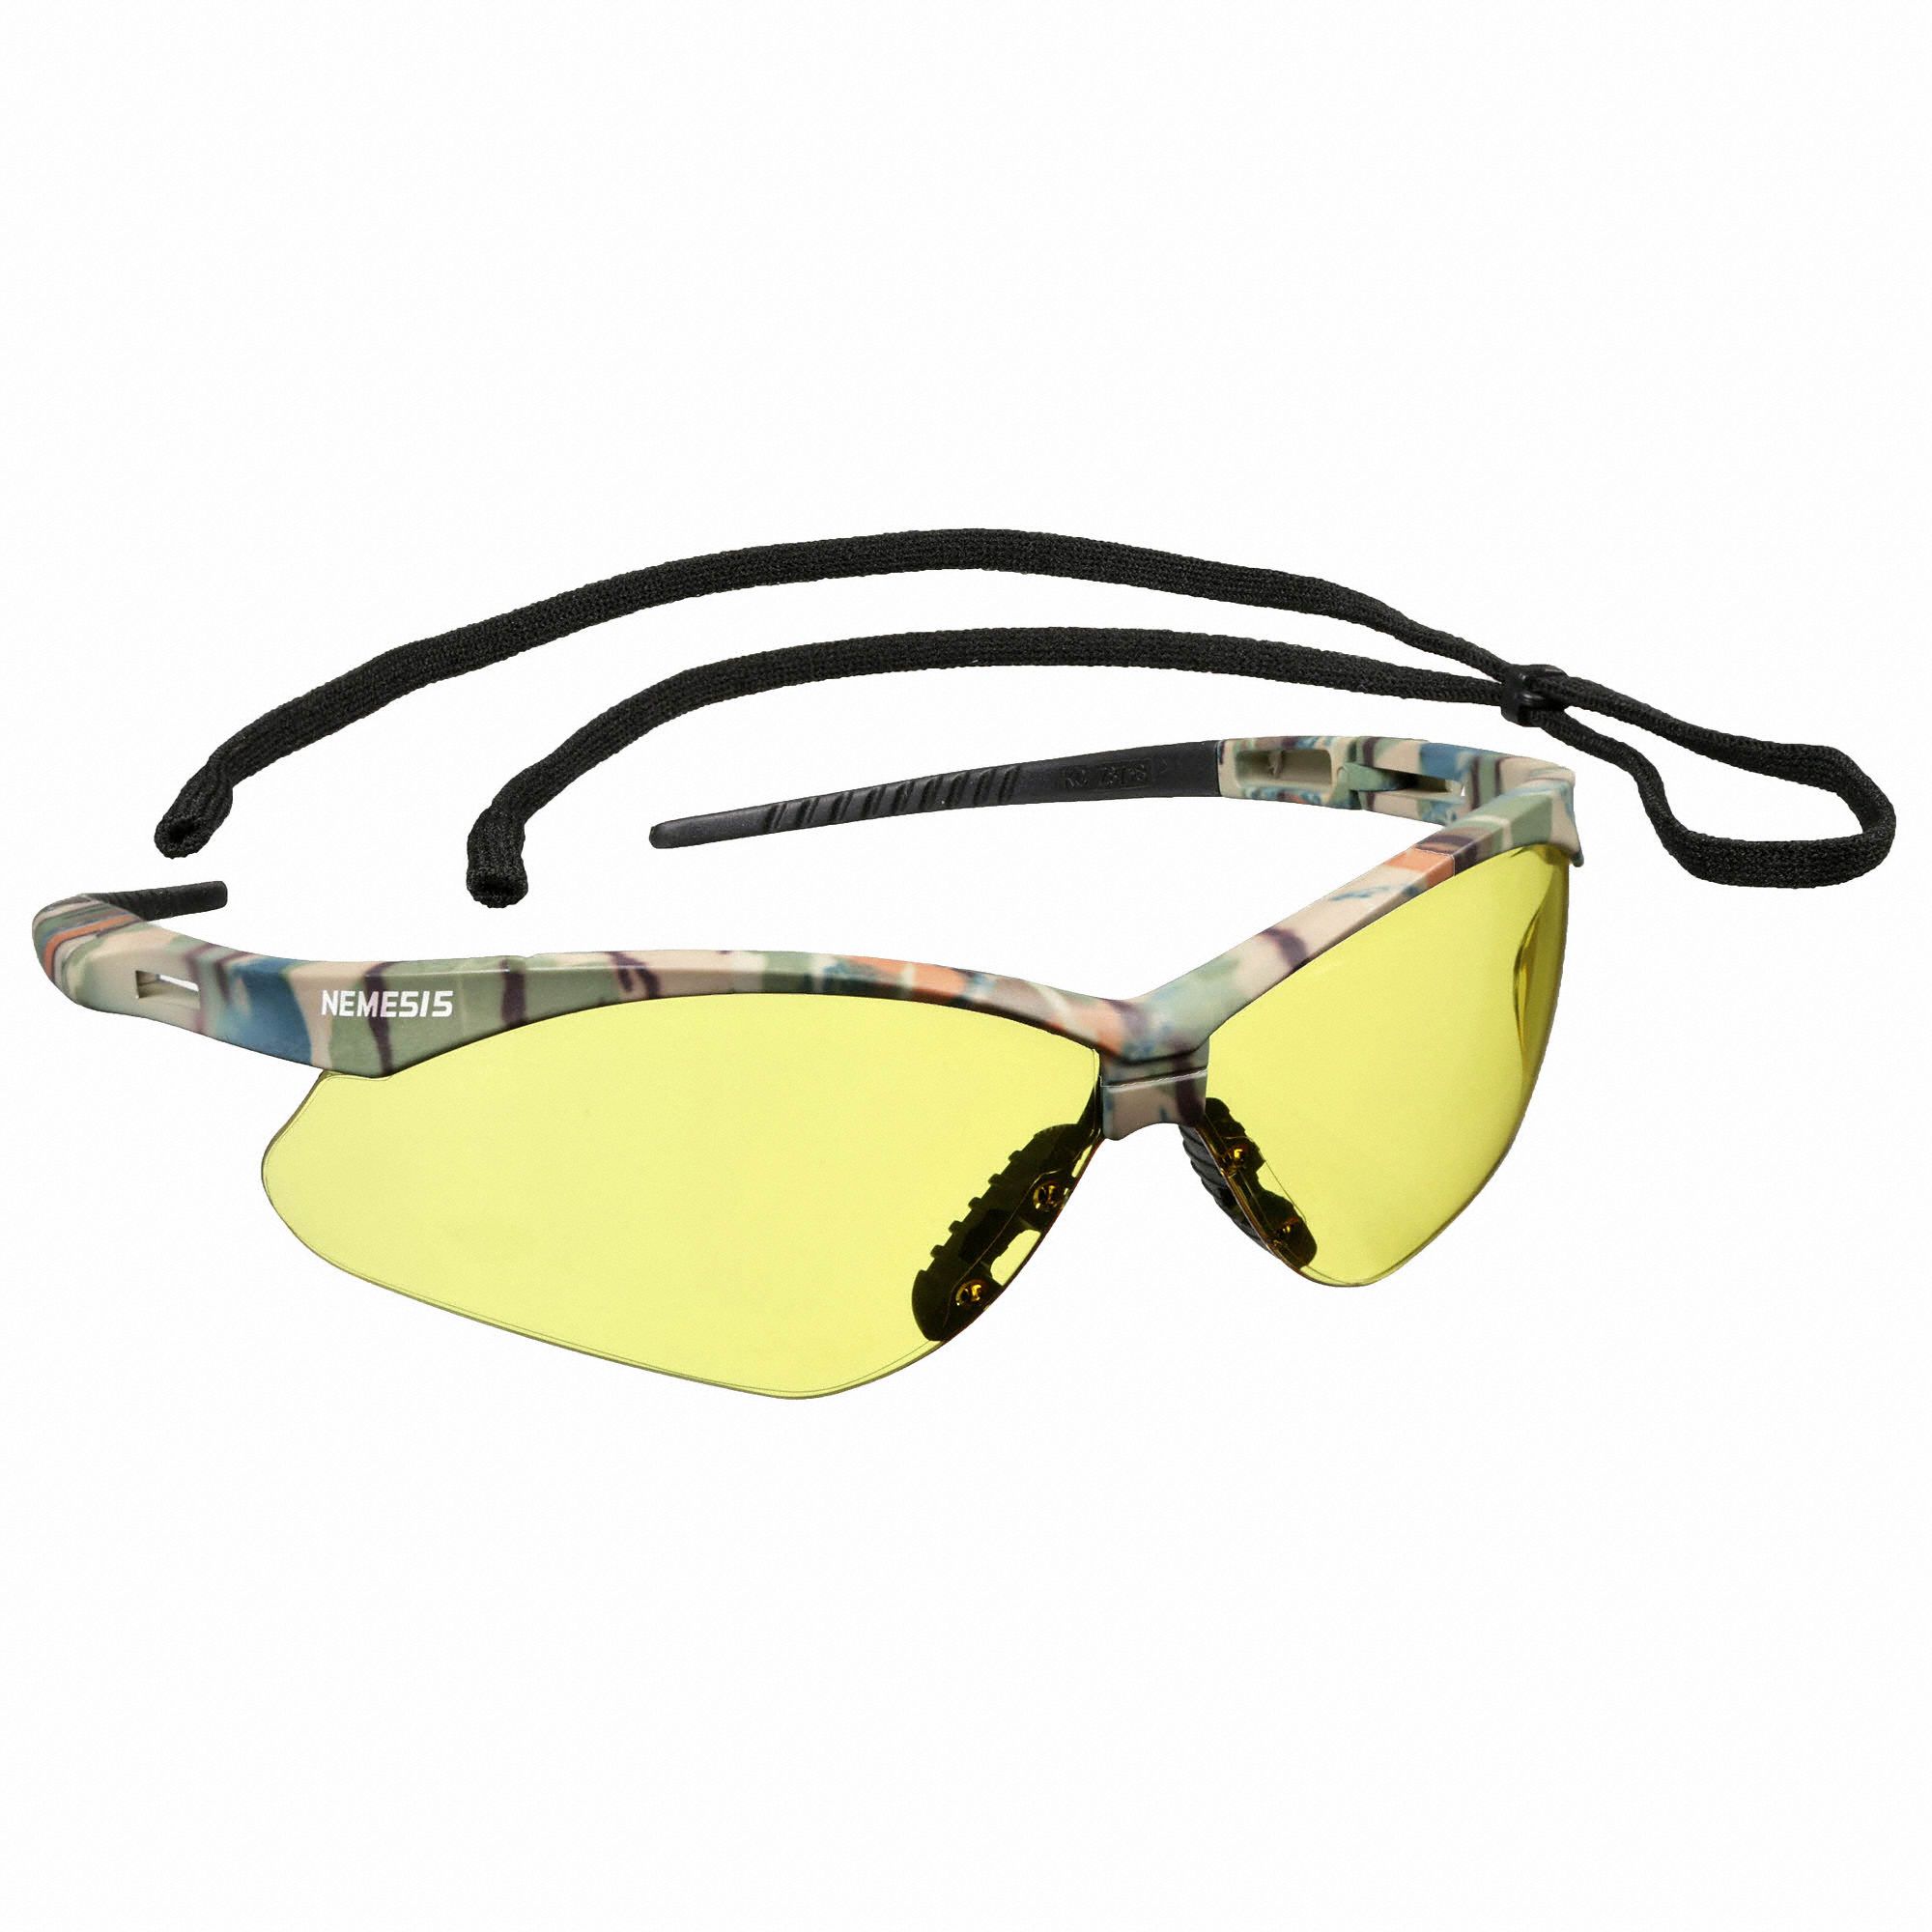 Kleenguard V30 Nemesis Anti Fog Scratch Resistant Safety Glasses Amber Lens Color 3uxx7